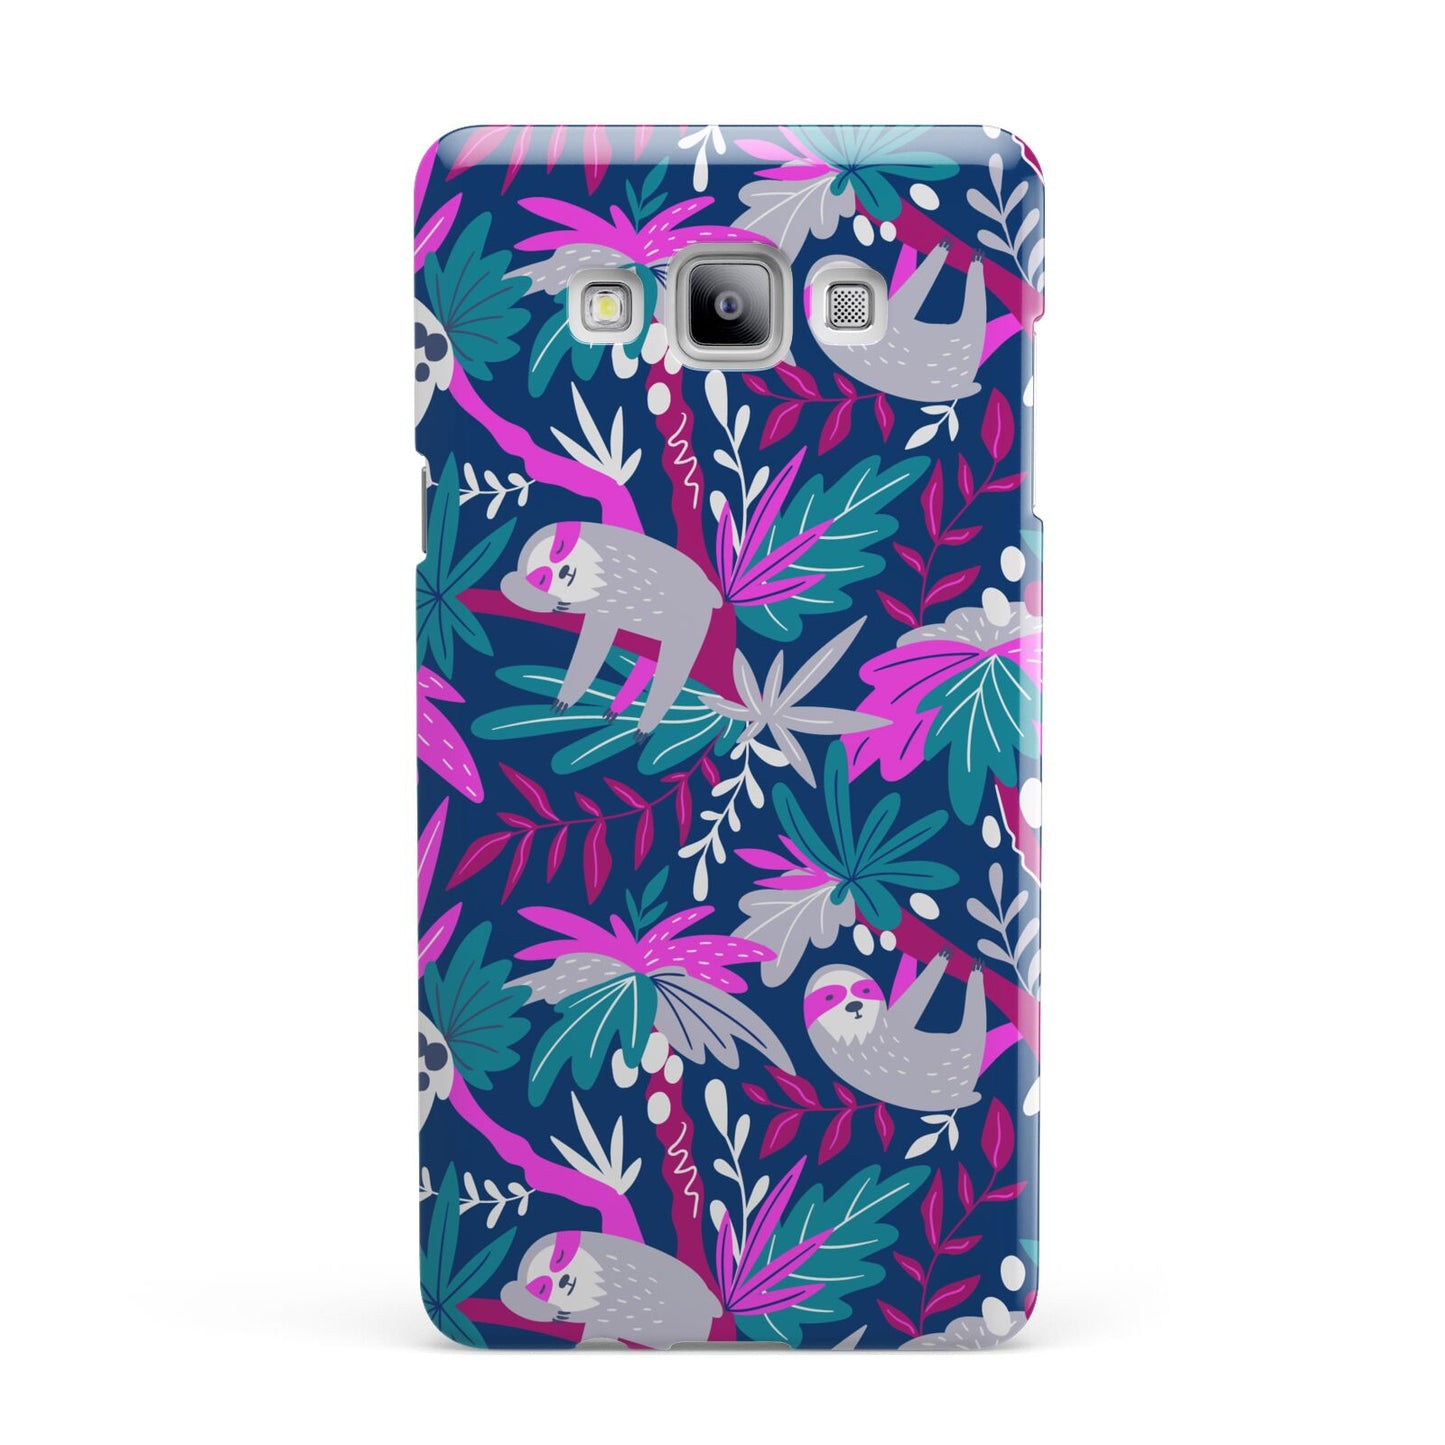 Sloth Samsung Galaxy A7 2015 Case